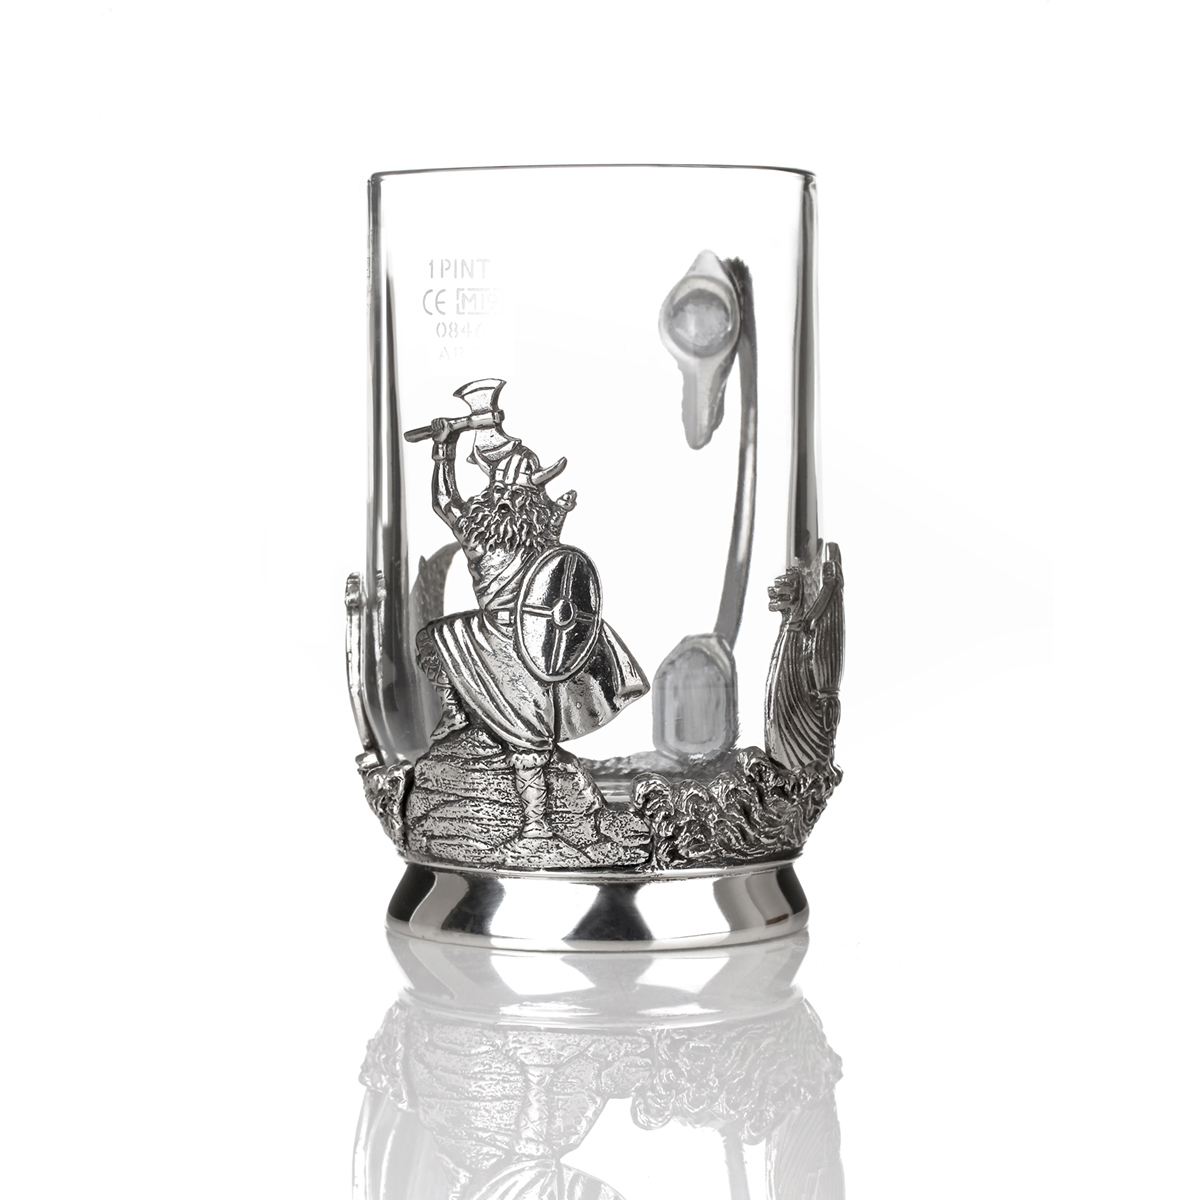 Skål - Wikinger Bierkrug aus Glas & Zinn mit Drachenschiff & keltischen Mustern